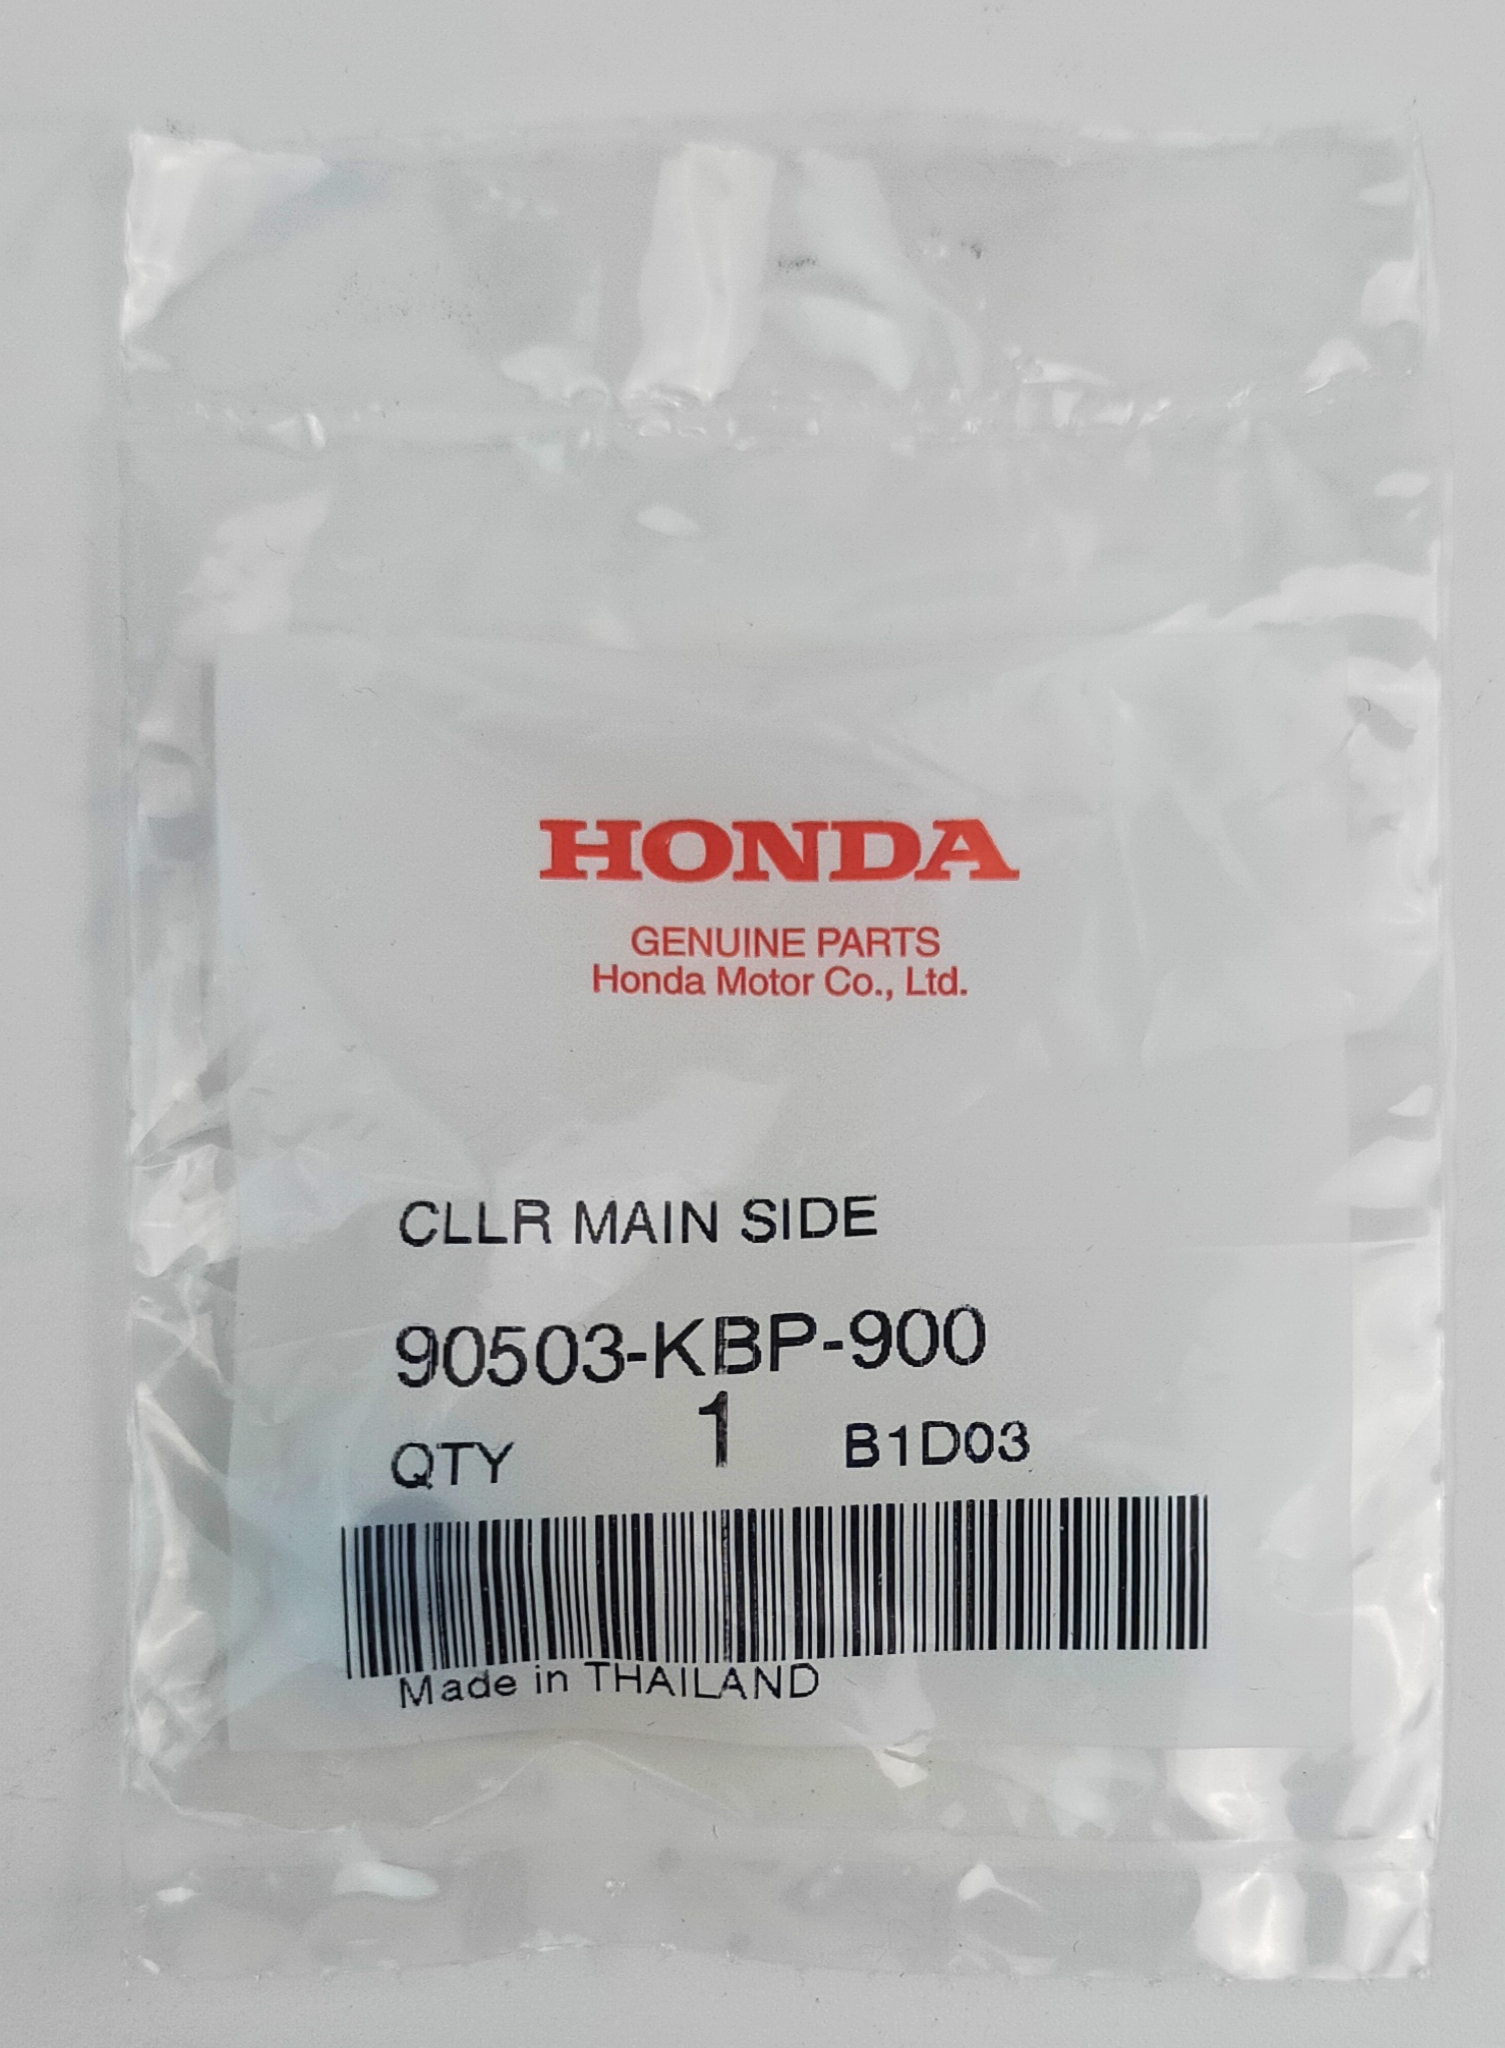 90503-KBP-900 ปลอกรอง Honda แท้ศูนย์